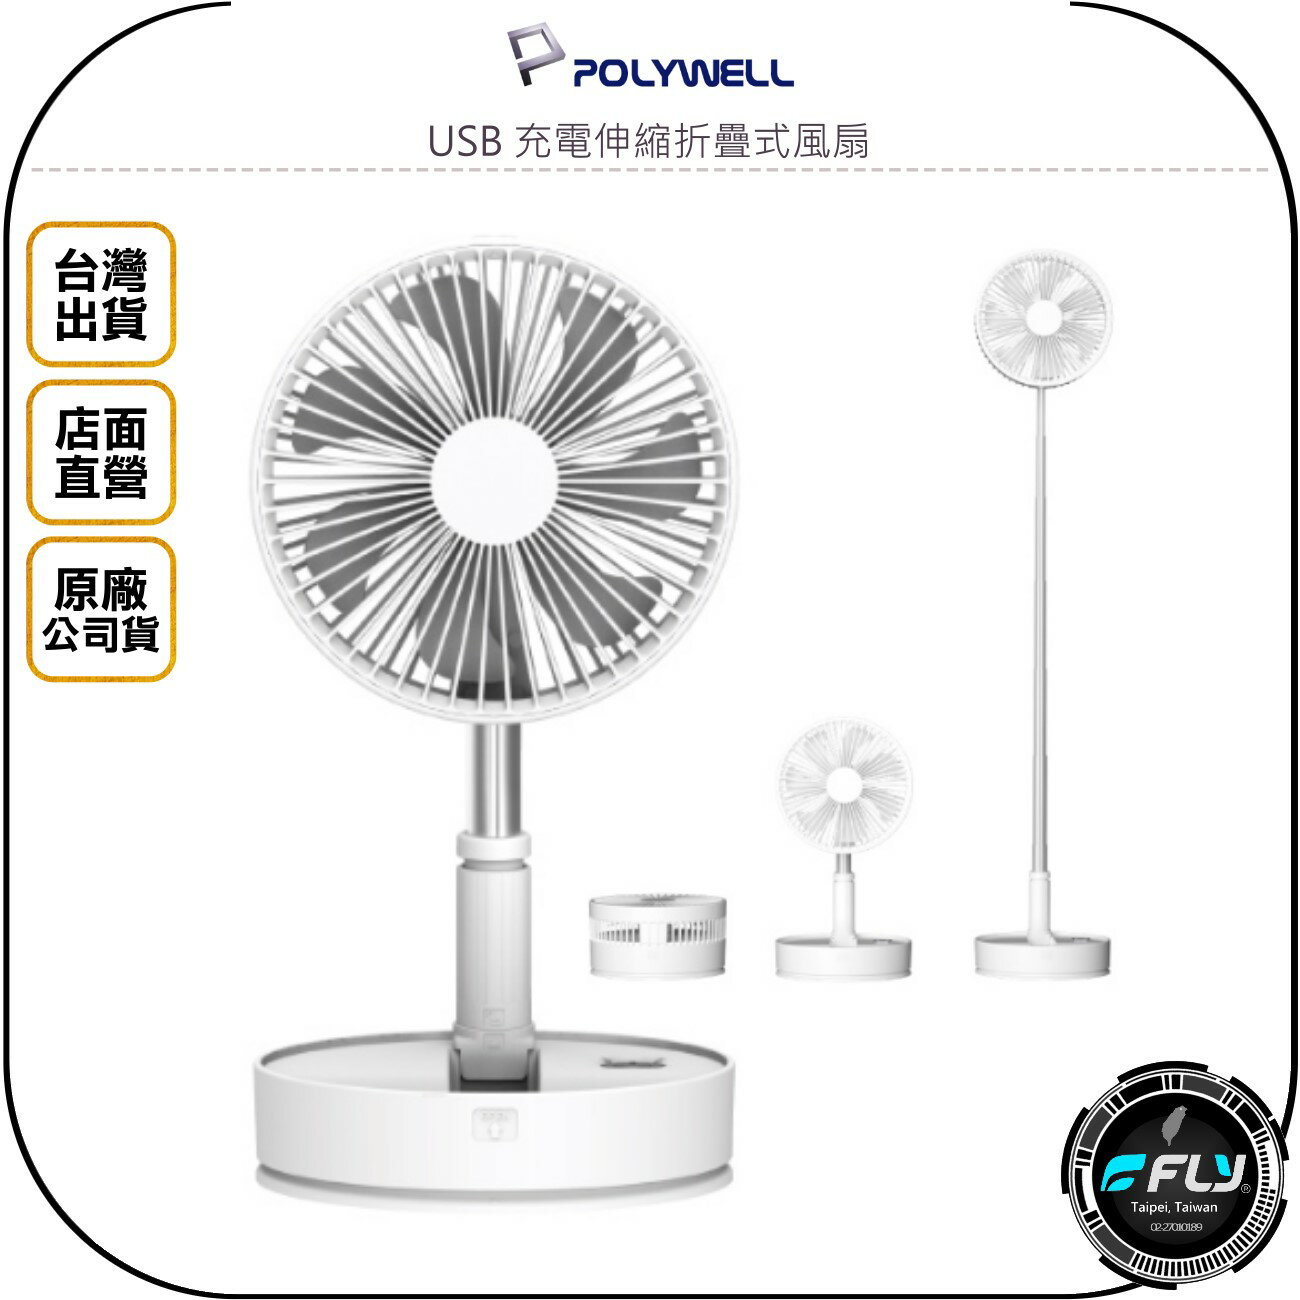 《飛翔無線3C》POLYWELL 寶利威爾 USB 充電伸縮折疊式風扇◉公司貨◉出遊攜帶◉4段風速◉左右搖擺◉上下轉向